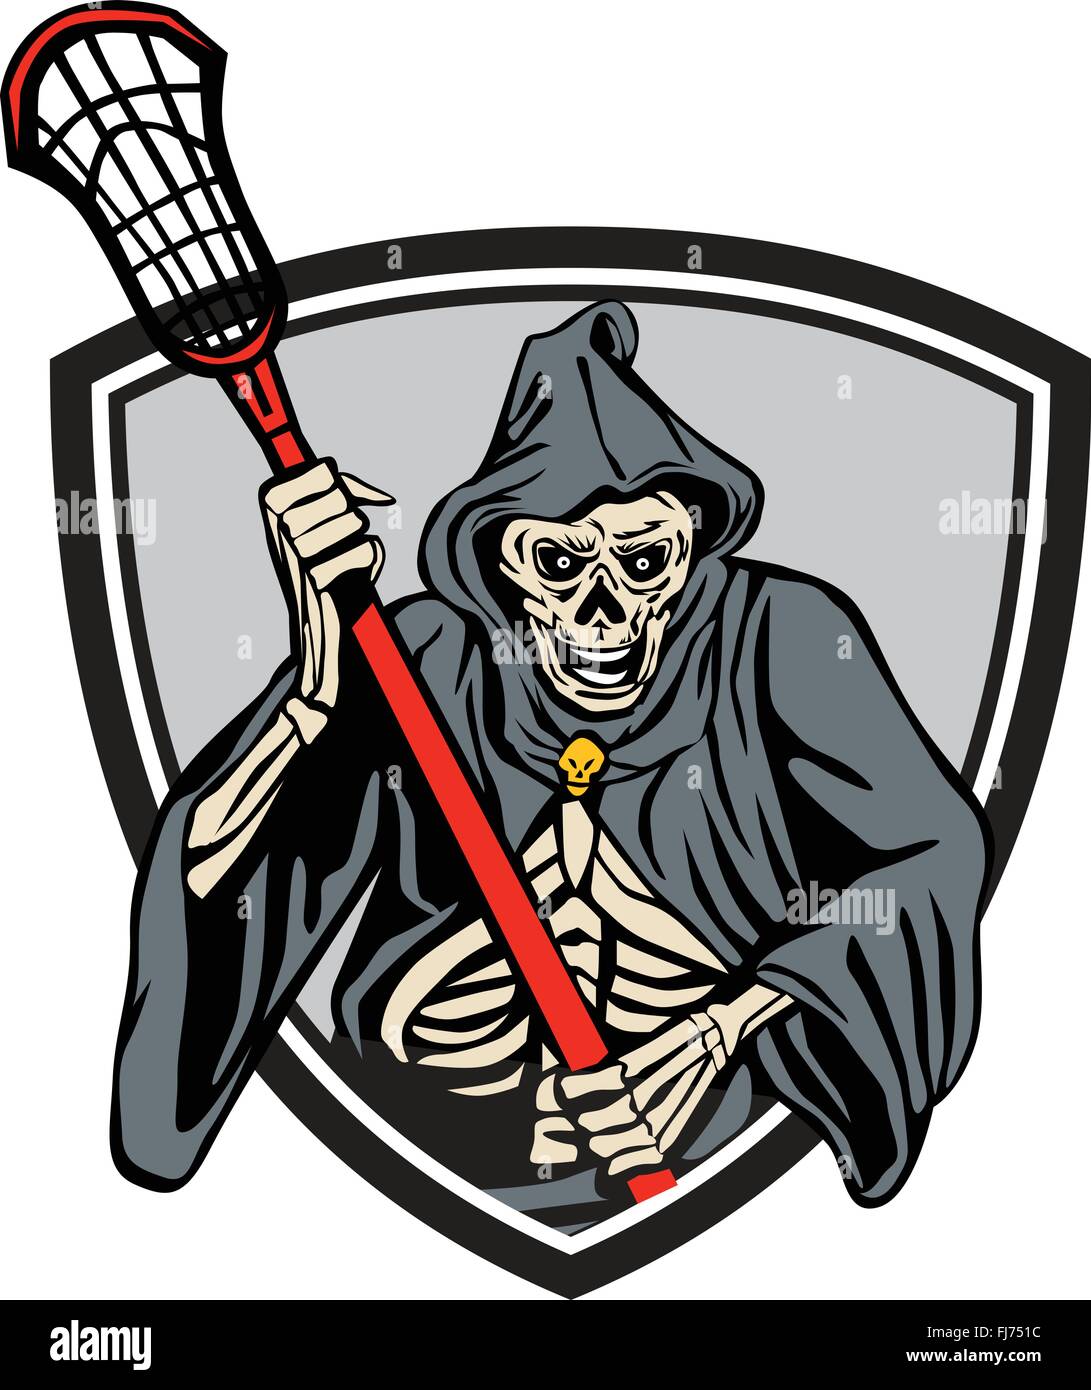 Illustrazione del Grim Reaper lacrosse player tenendo un crosse o lacrosse stick pole visto dal lato anteriore impostato all'interno del crest scudo fatto in stile retrò. Illustrazione Vettoriale